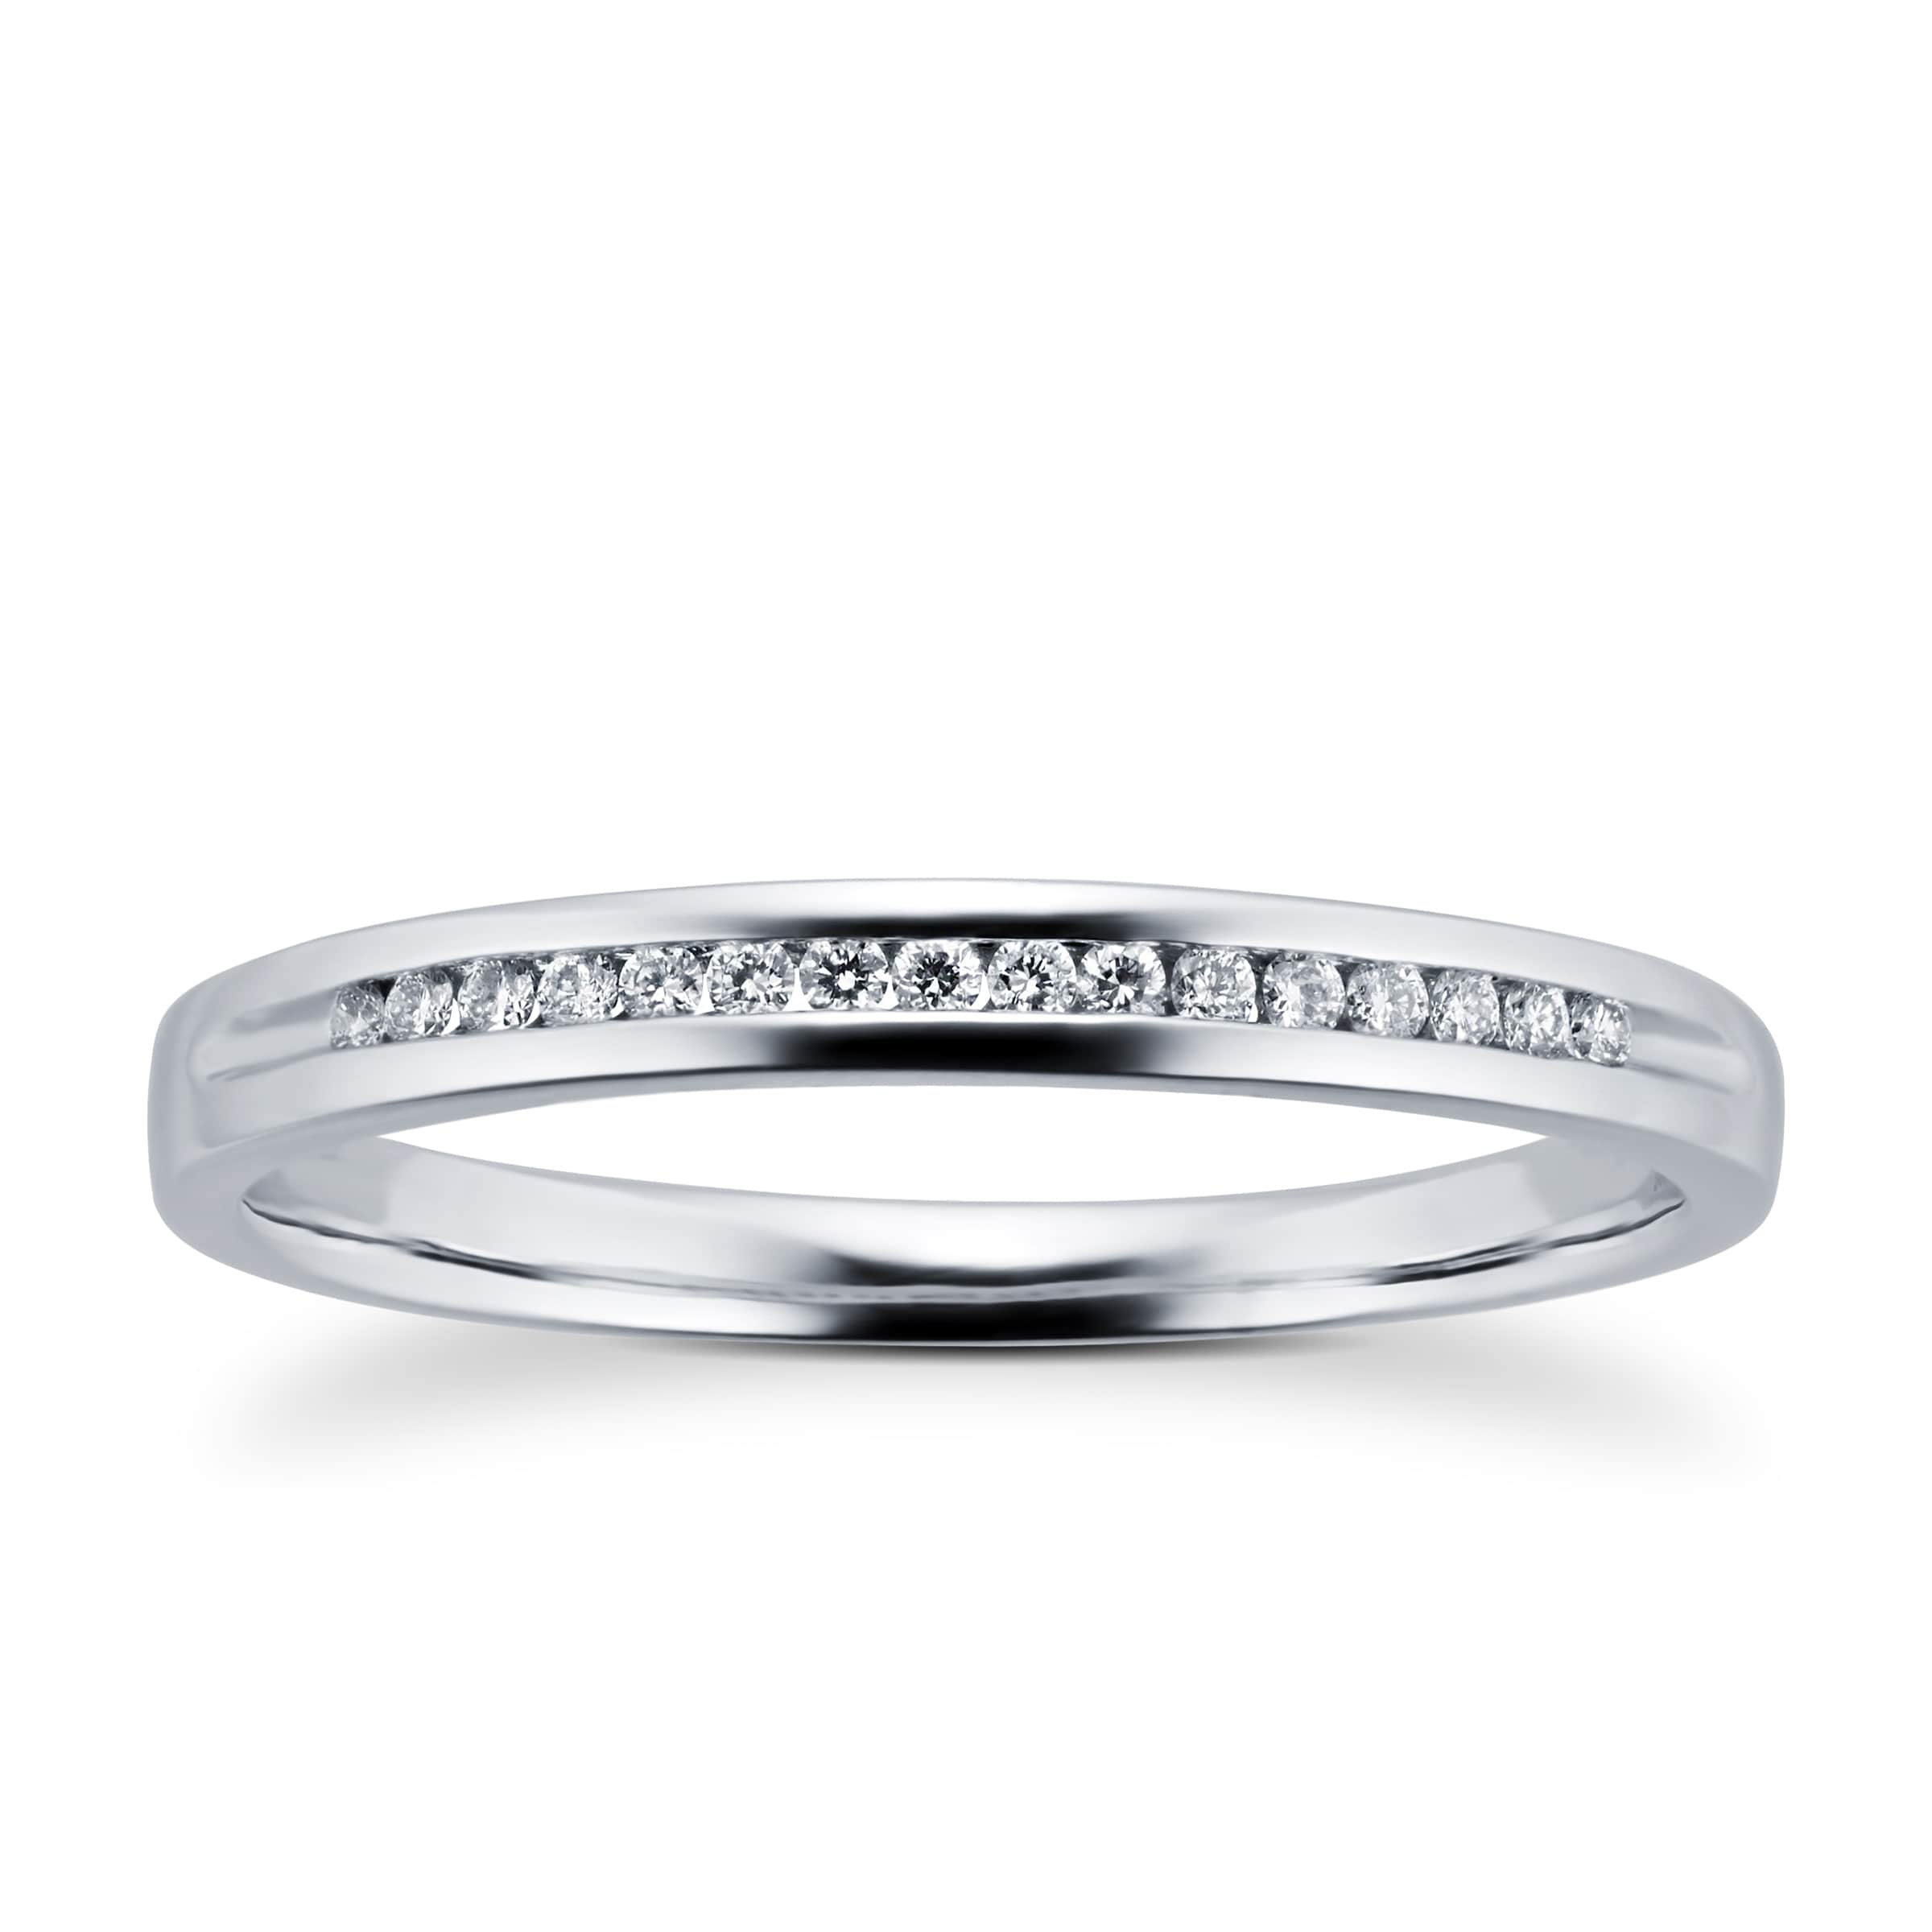 Ladies Diamond Set 2mm Wedding Ring In 18 Carat White Gold - Ring Size K